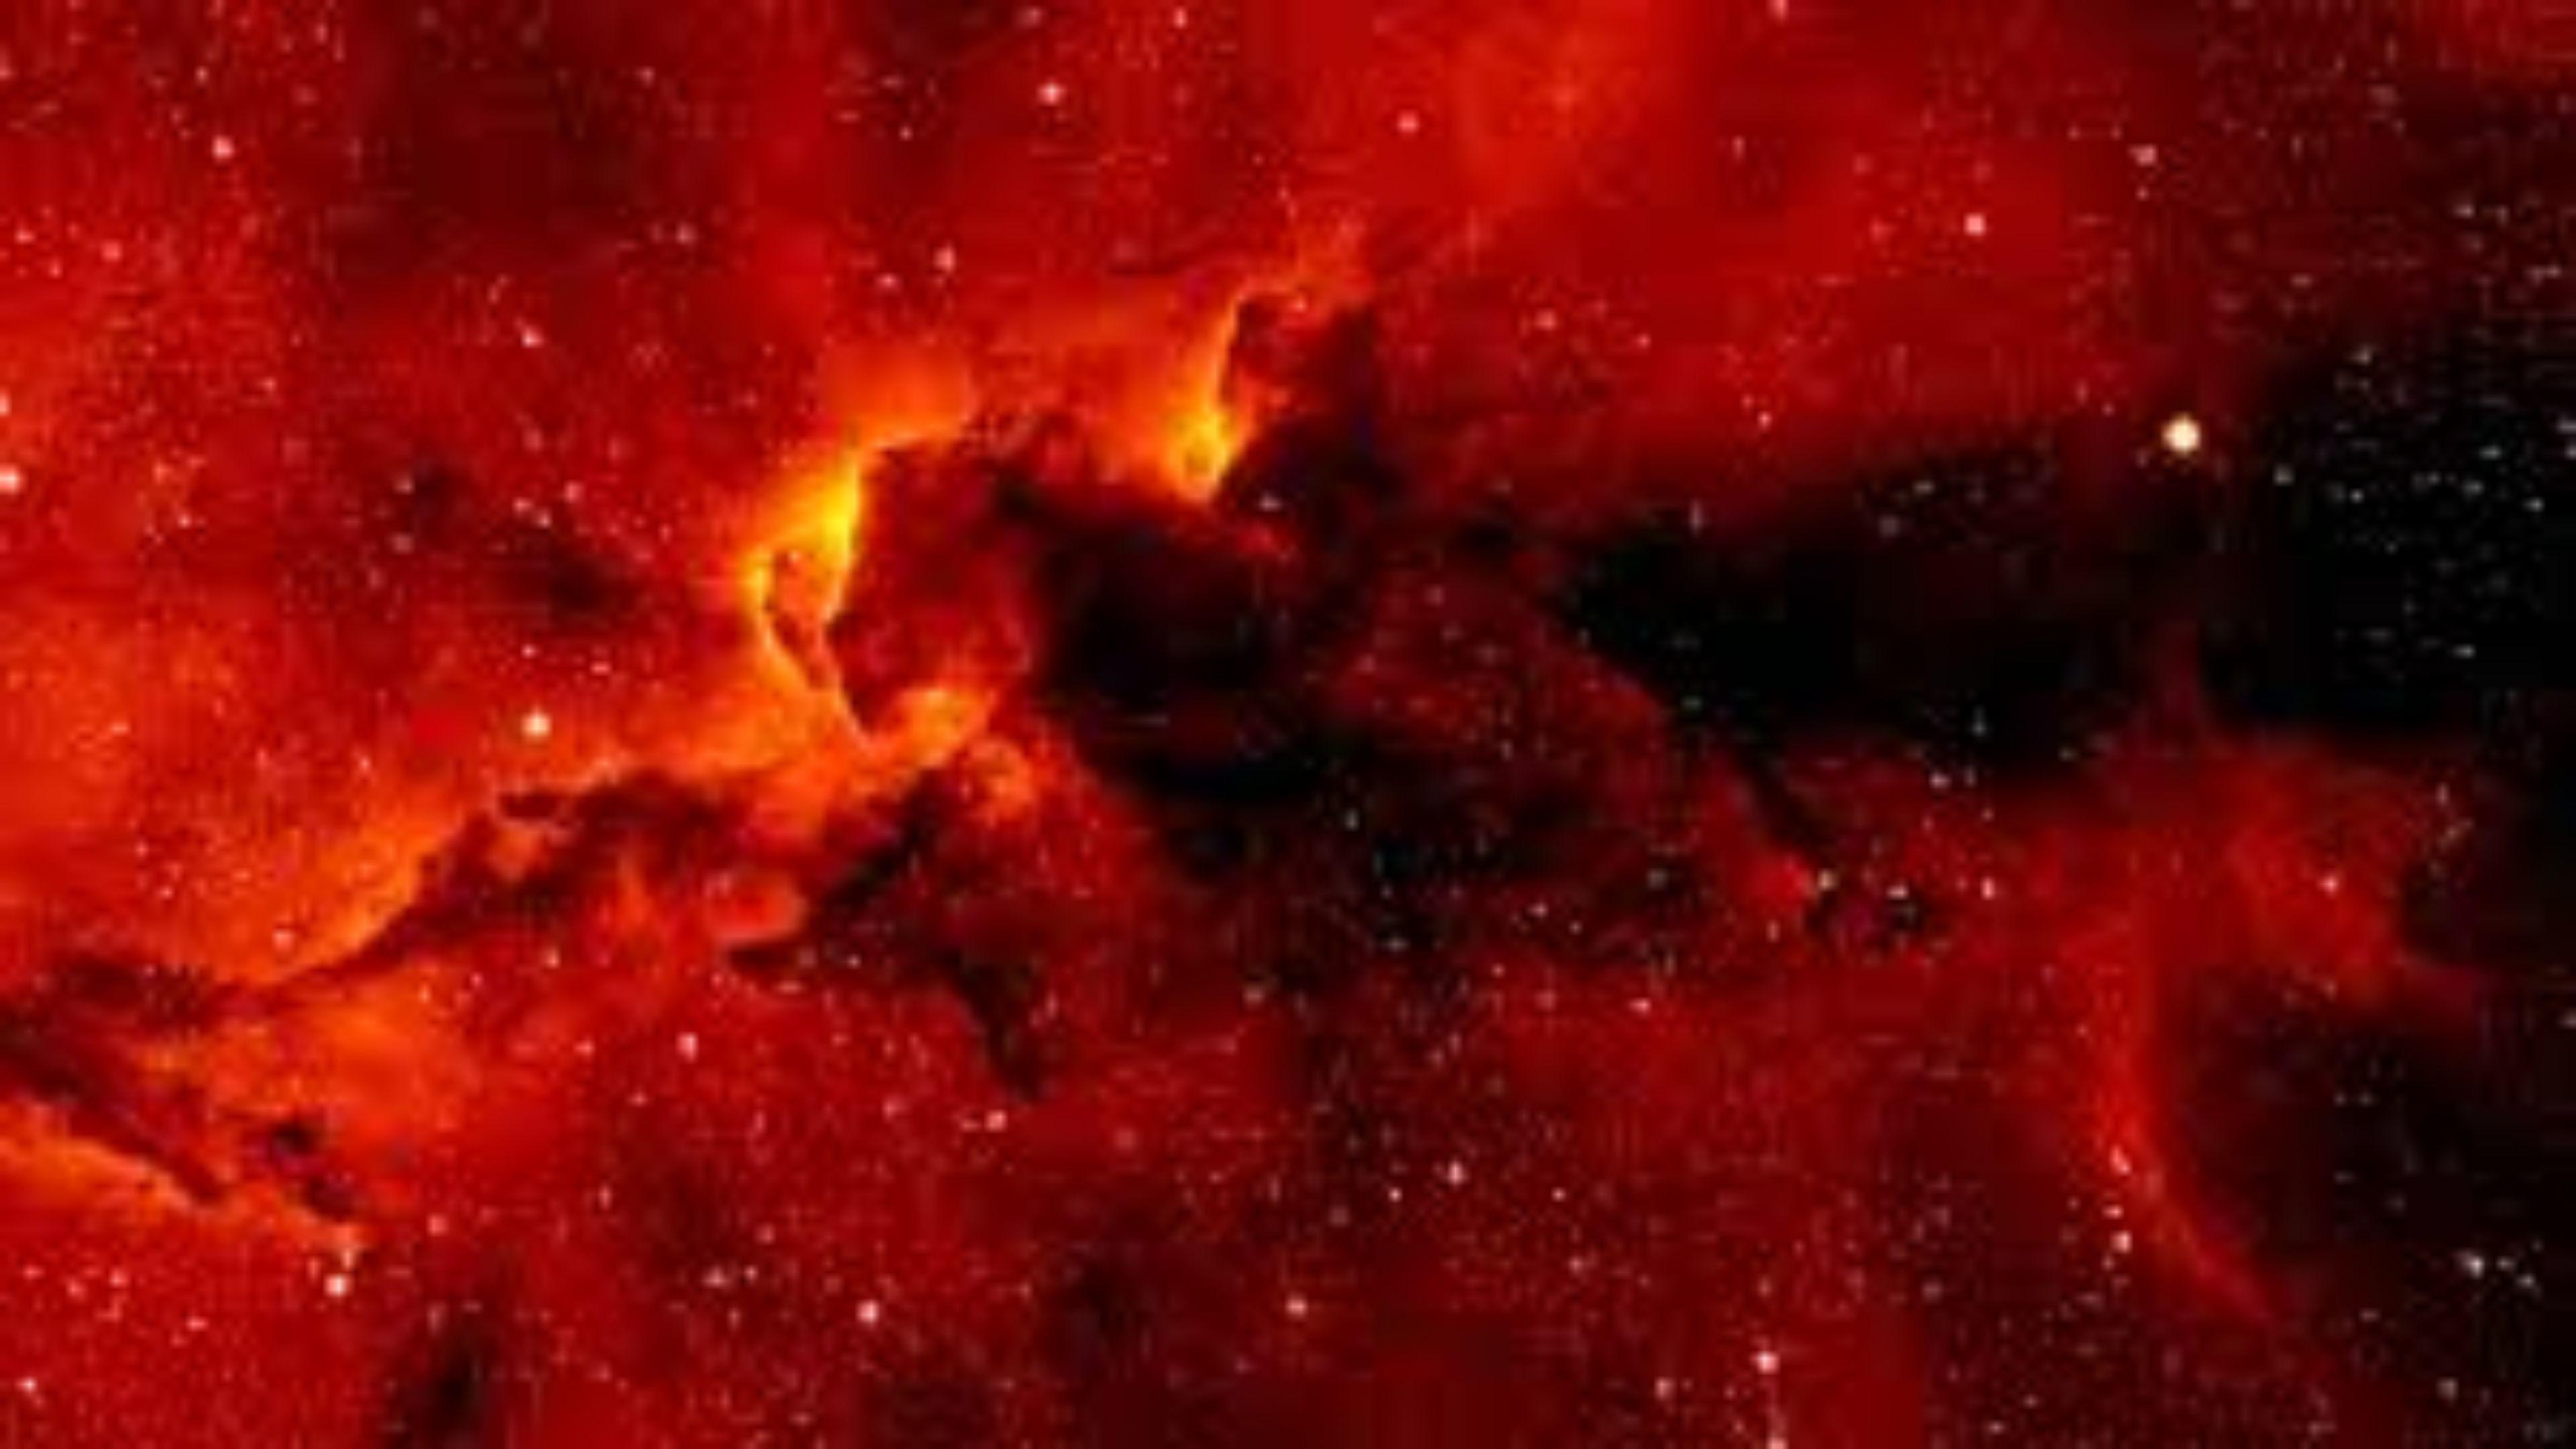 Wallpaper nền máy tính thiên hà đỏ sẽ cho phép bạn tận hưởng khung cảnh đầy sắc màu của vũ trụ. Hãy tận hưởng cảm giác như đang đứng trước một vũ trụ đầy màu sắc và đẹp đẽ. Đừng bỏ lỡ cơ hội này, hãy tải về và cập nhật ngay.